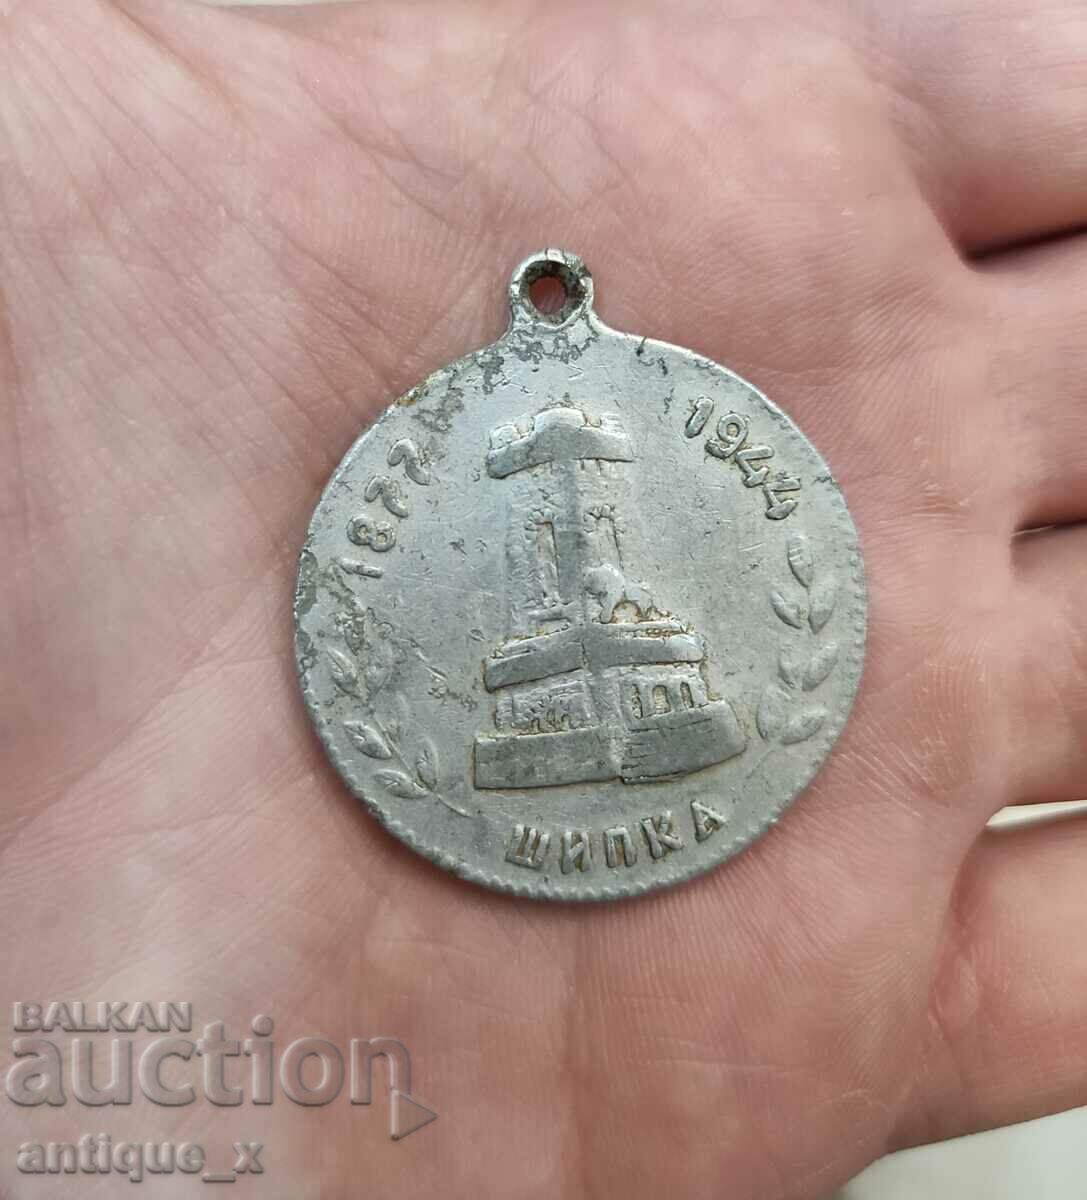 Βουλγαρικό βασιλικό μετάλλιο αλουμινίου - Shipka - 1877-1944